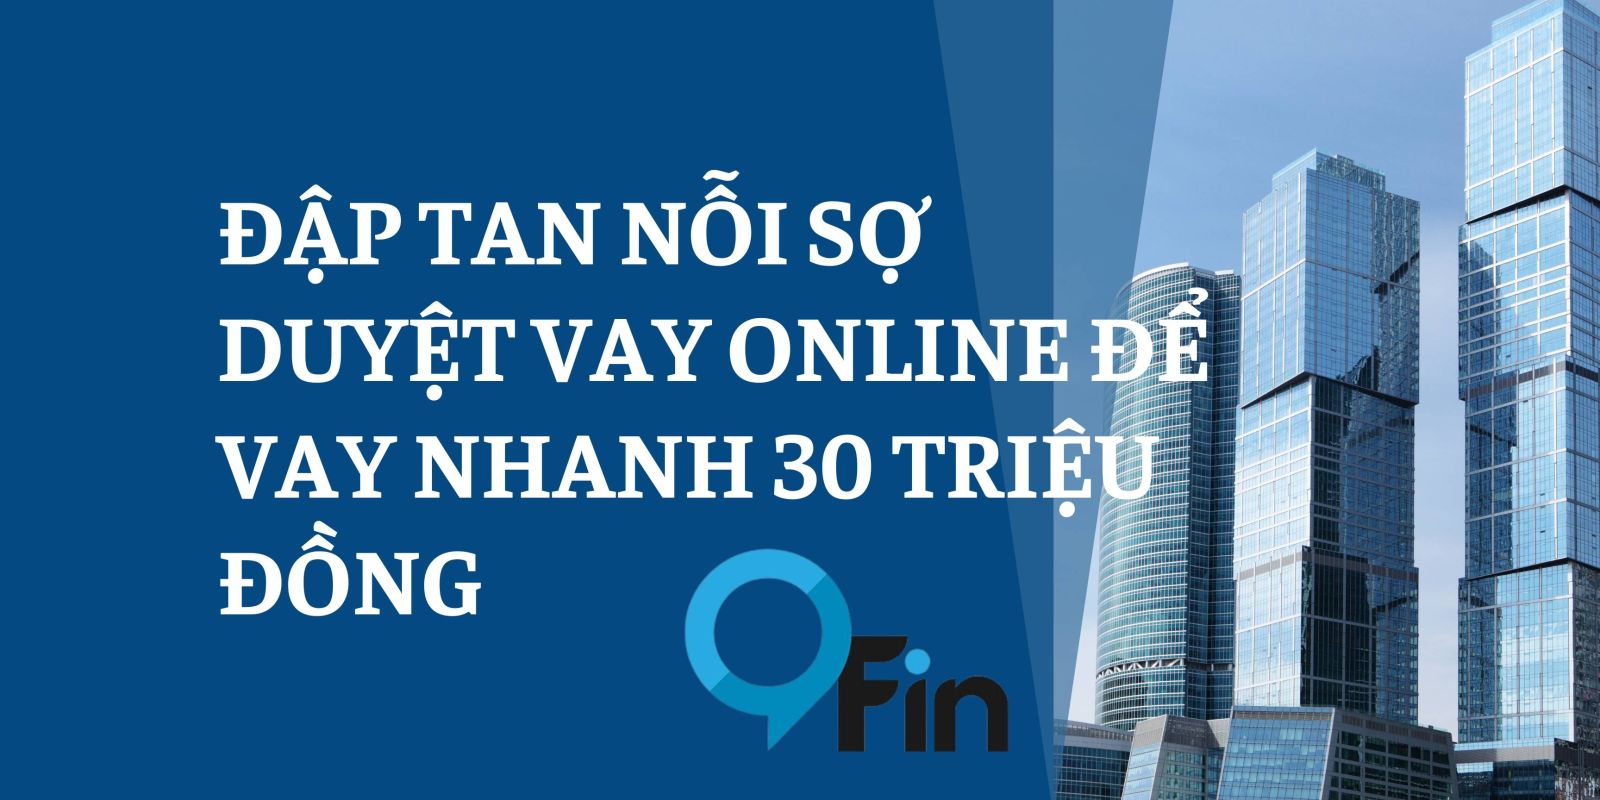 Đập Tan Nỗi Sợ Duyệt Vay Online Để Vay Nhanh 30 Triệu Đồng